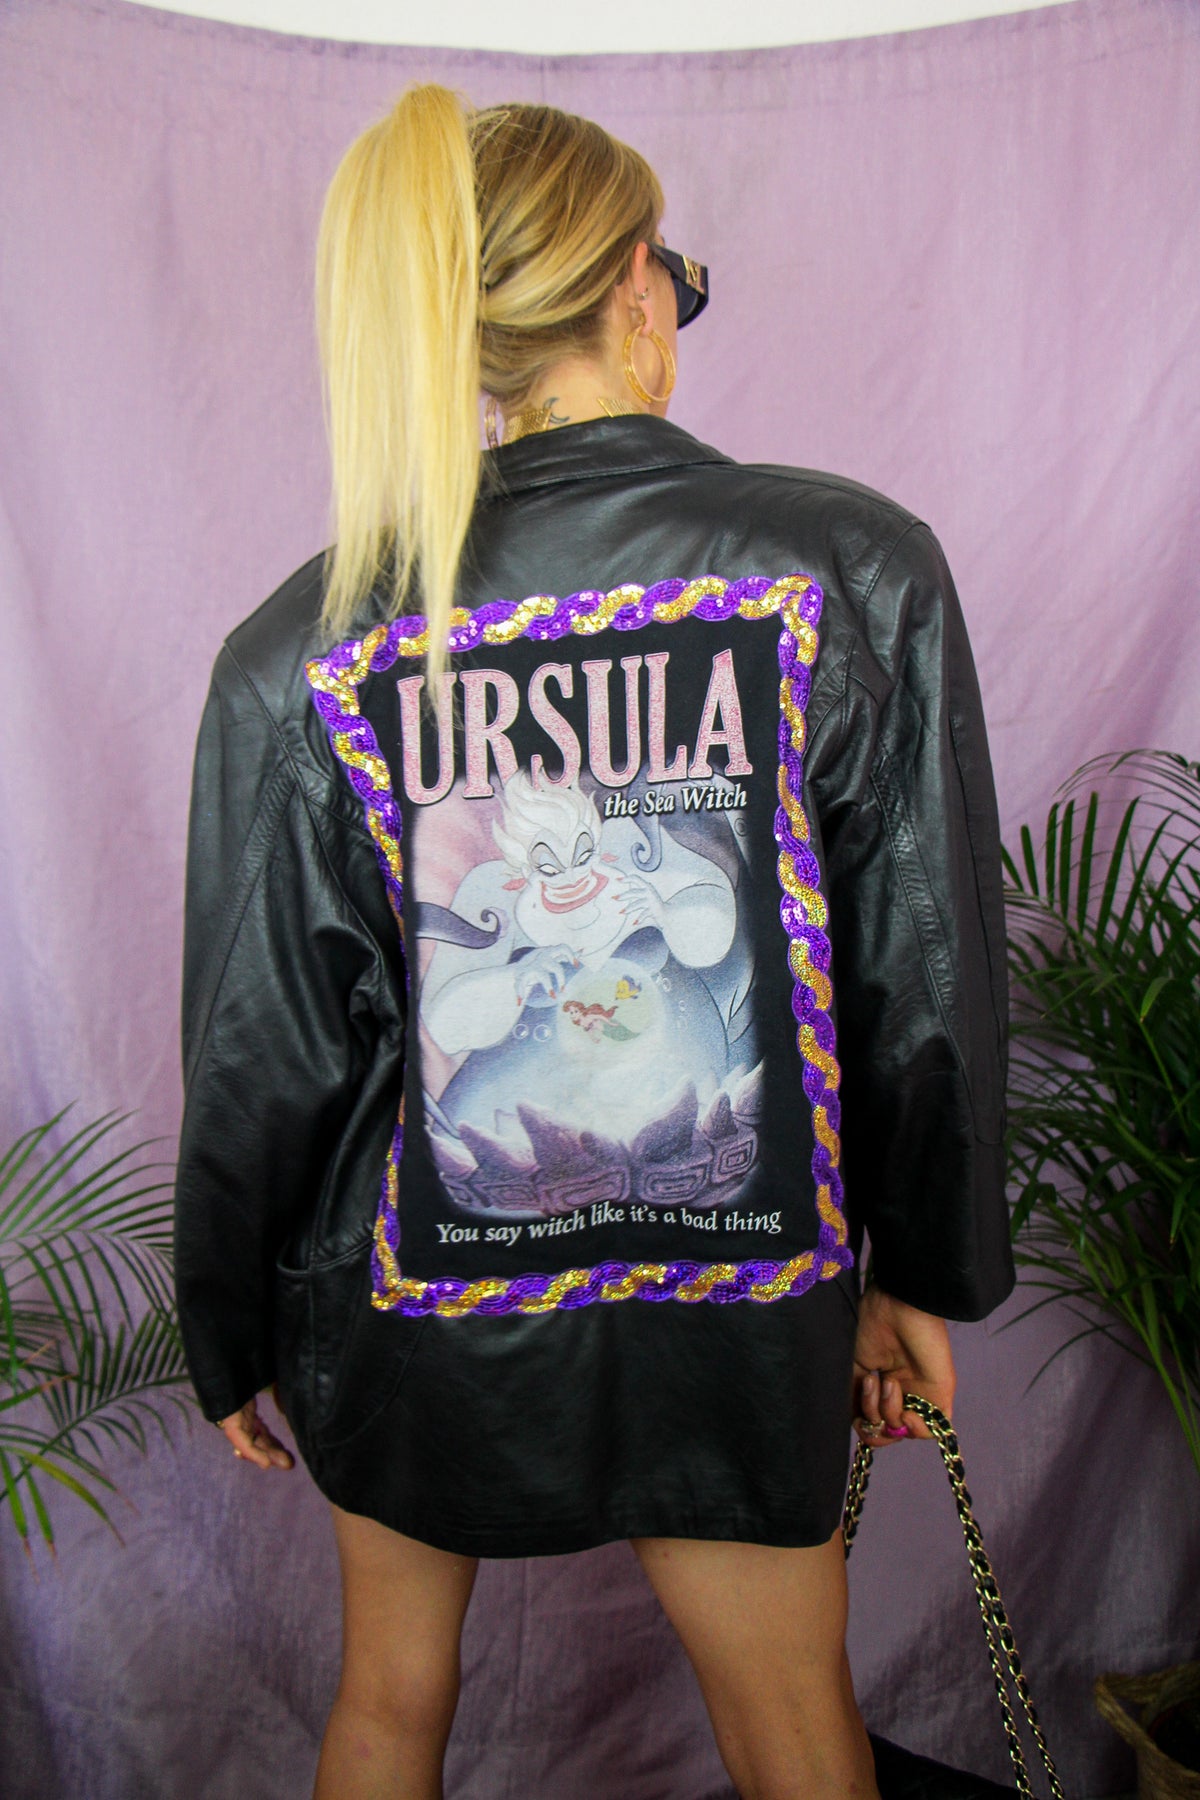 Ursula got this